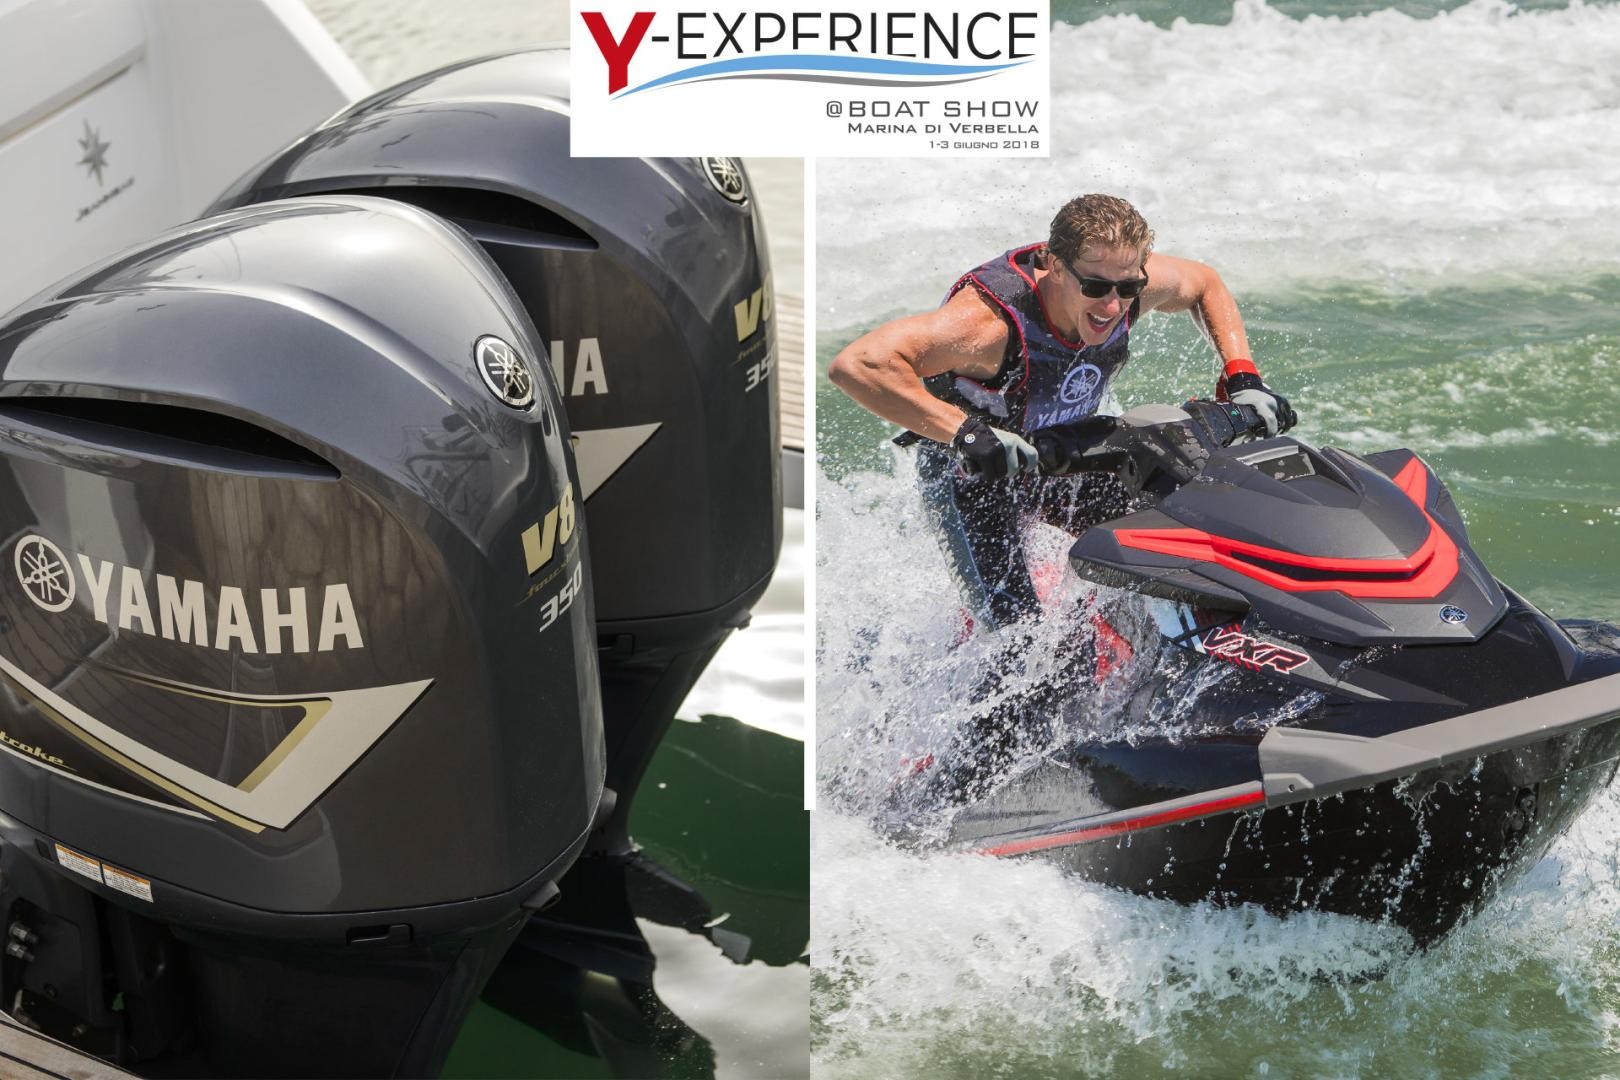 Yamaha Experience fa tappa al 1° Boat Show del Lago Maggiore